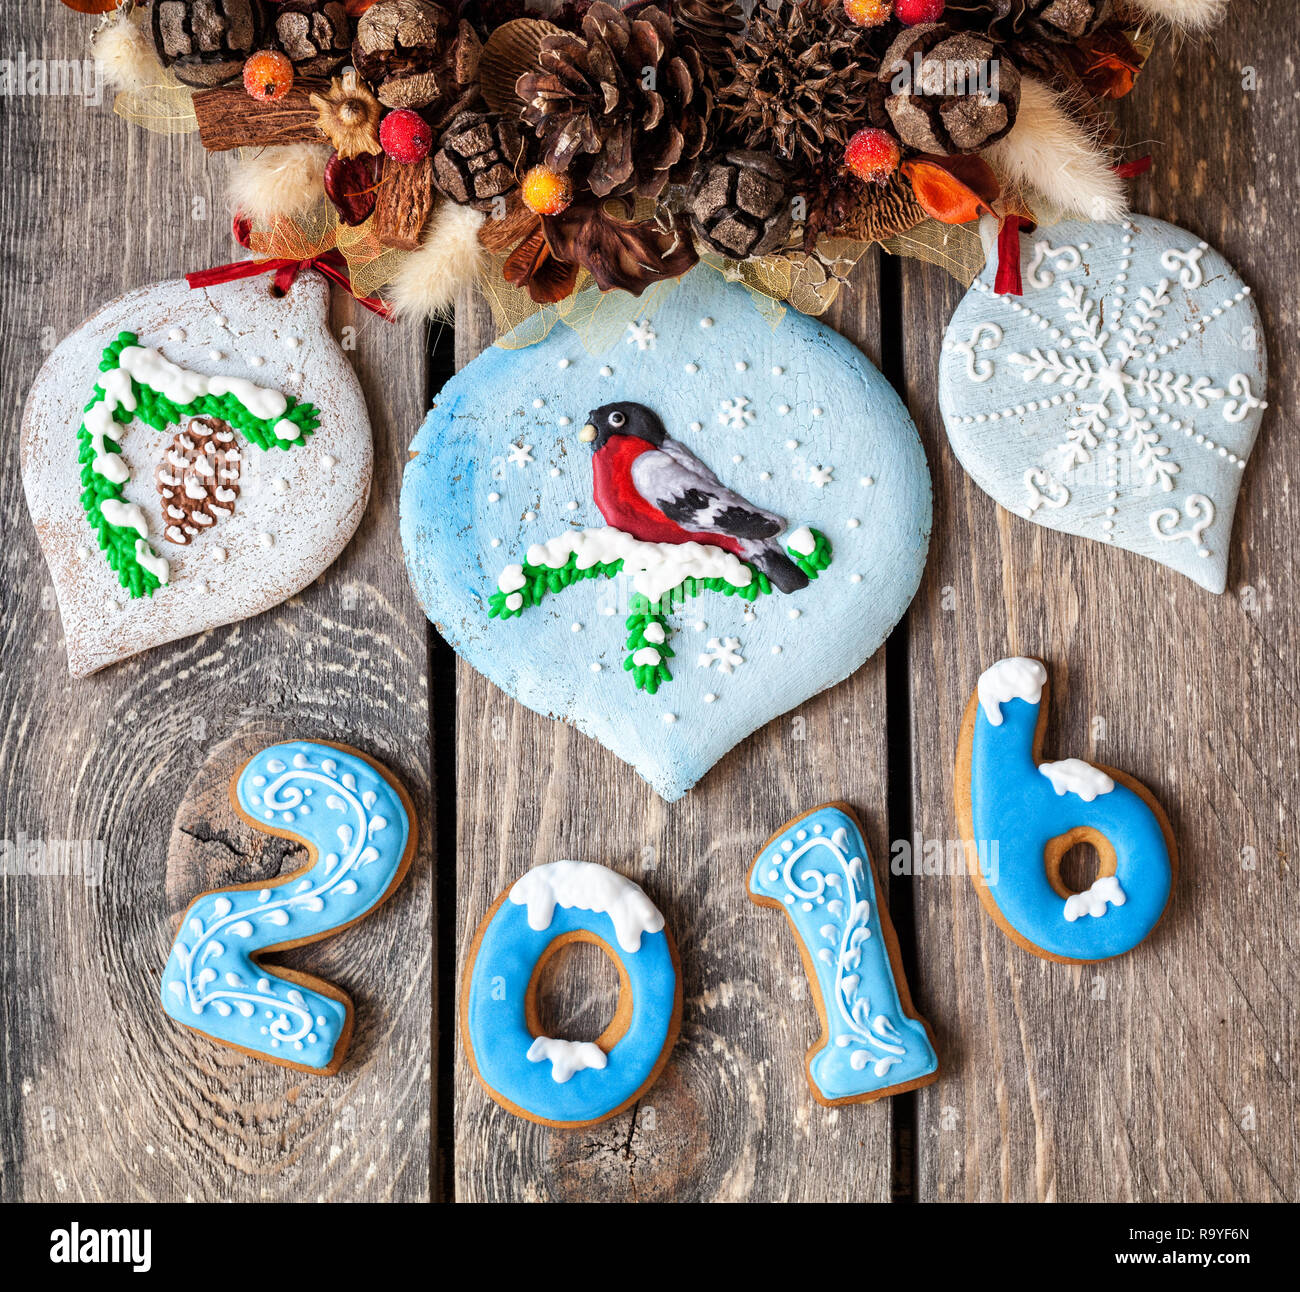 L'année 2016 et d'épice de Noël jouets doux sur des oiseaux près de Noël à manger sur fond de bois Banque D'Images